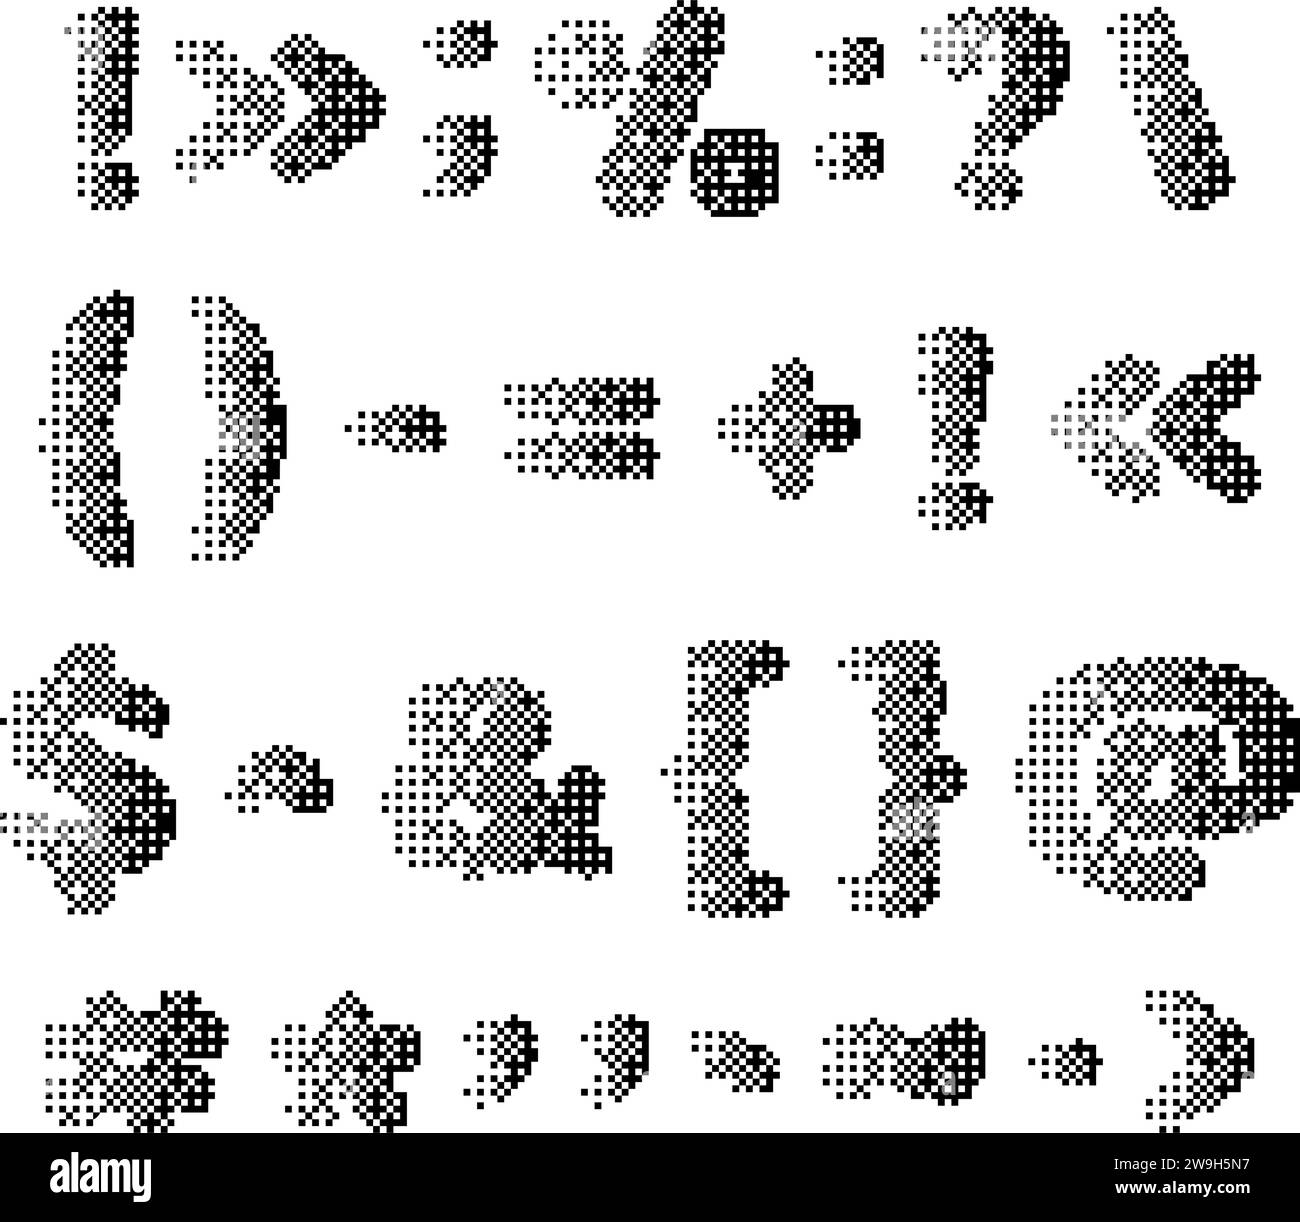 Satz von Pixelpunktionszeichen mit verrauschter Textur. Symbole und Satzzeichen mit rauschender Textur für das Technologiedesign, Logo-Symbol. Vektorillustrat Stock Vektor